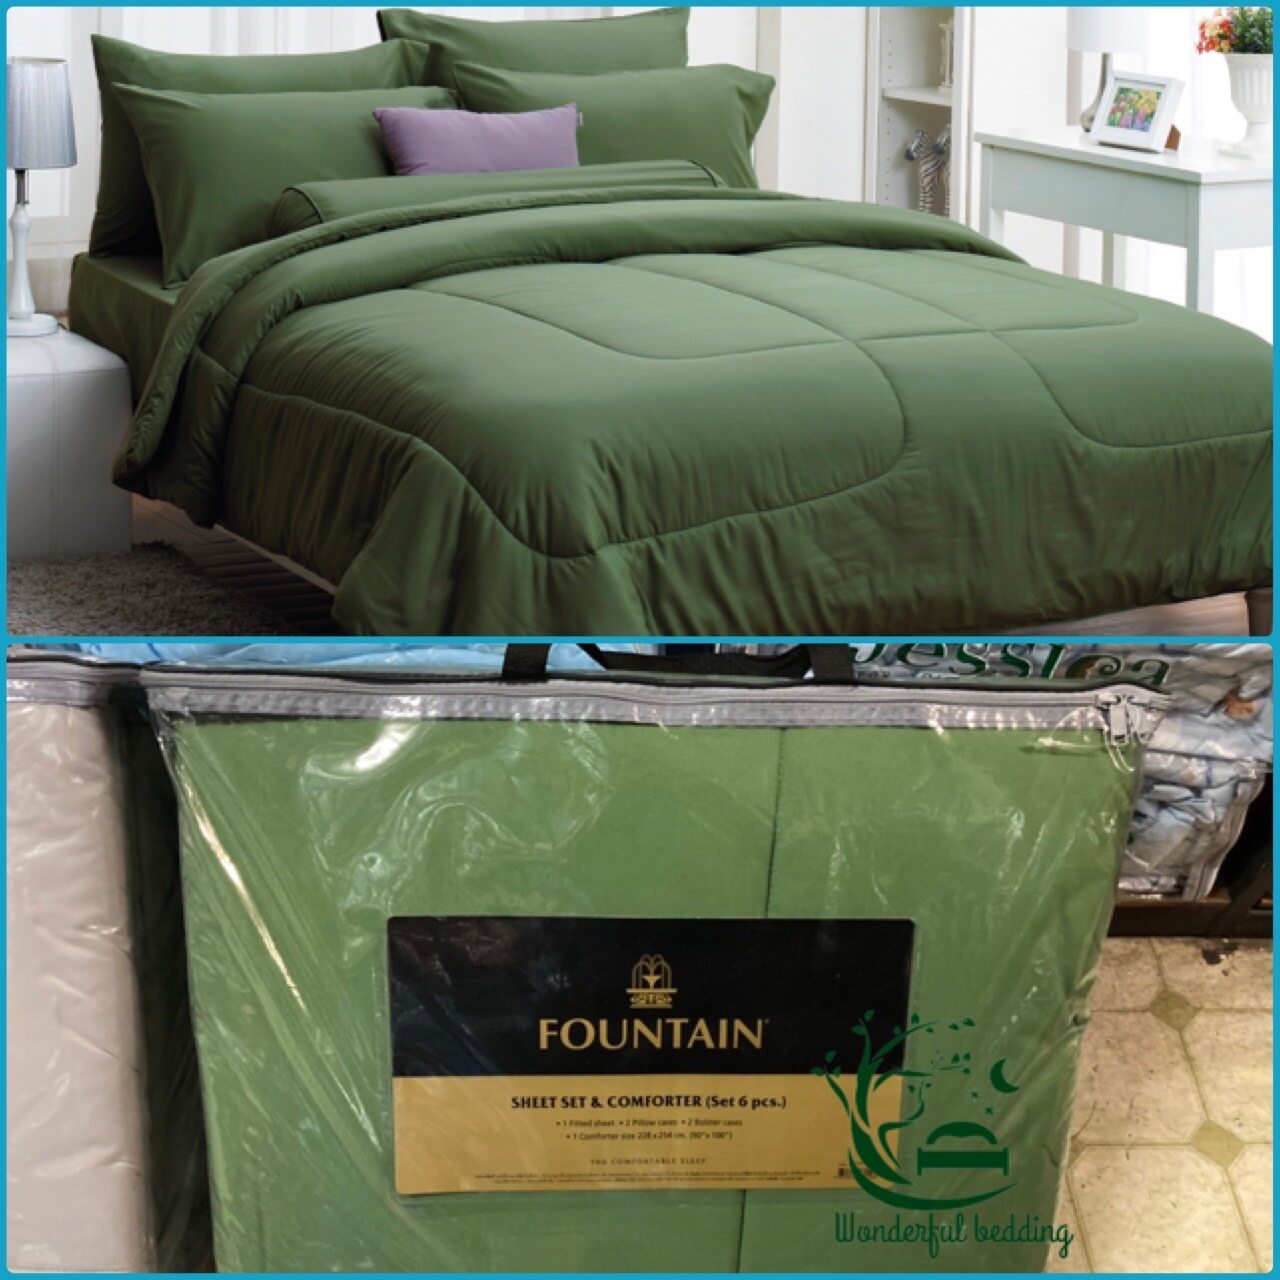 FOUNTAIN ผ้านวม + ชุดผ้าปู ผ้าปู ที่นอน แท้ 100% FTC สีพื้น เขียว Green Gray เทา ขนาด 3.5 5 6ฟุต ชุดเครื่องนอน ผ้านวม ผ้าปูที่นอน wonderful bedding  สี → Greenขนาดสินค้า 5 ฟุต